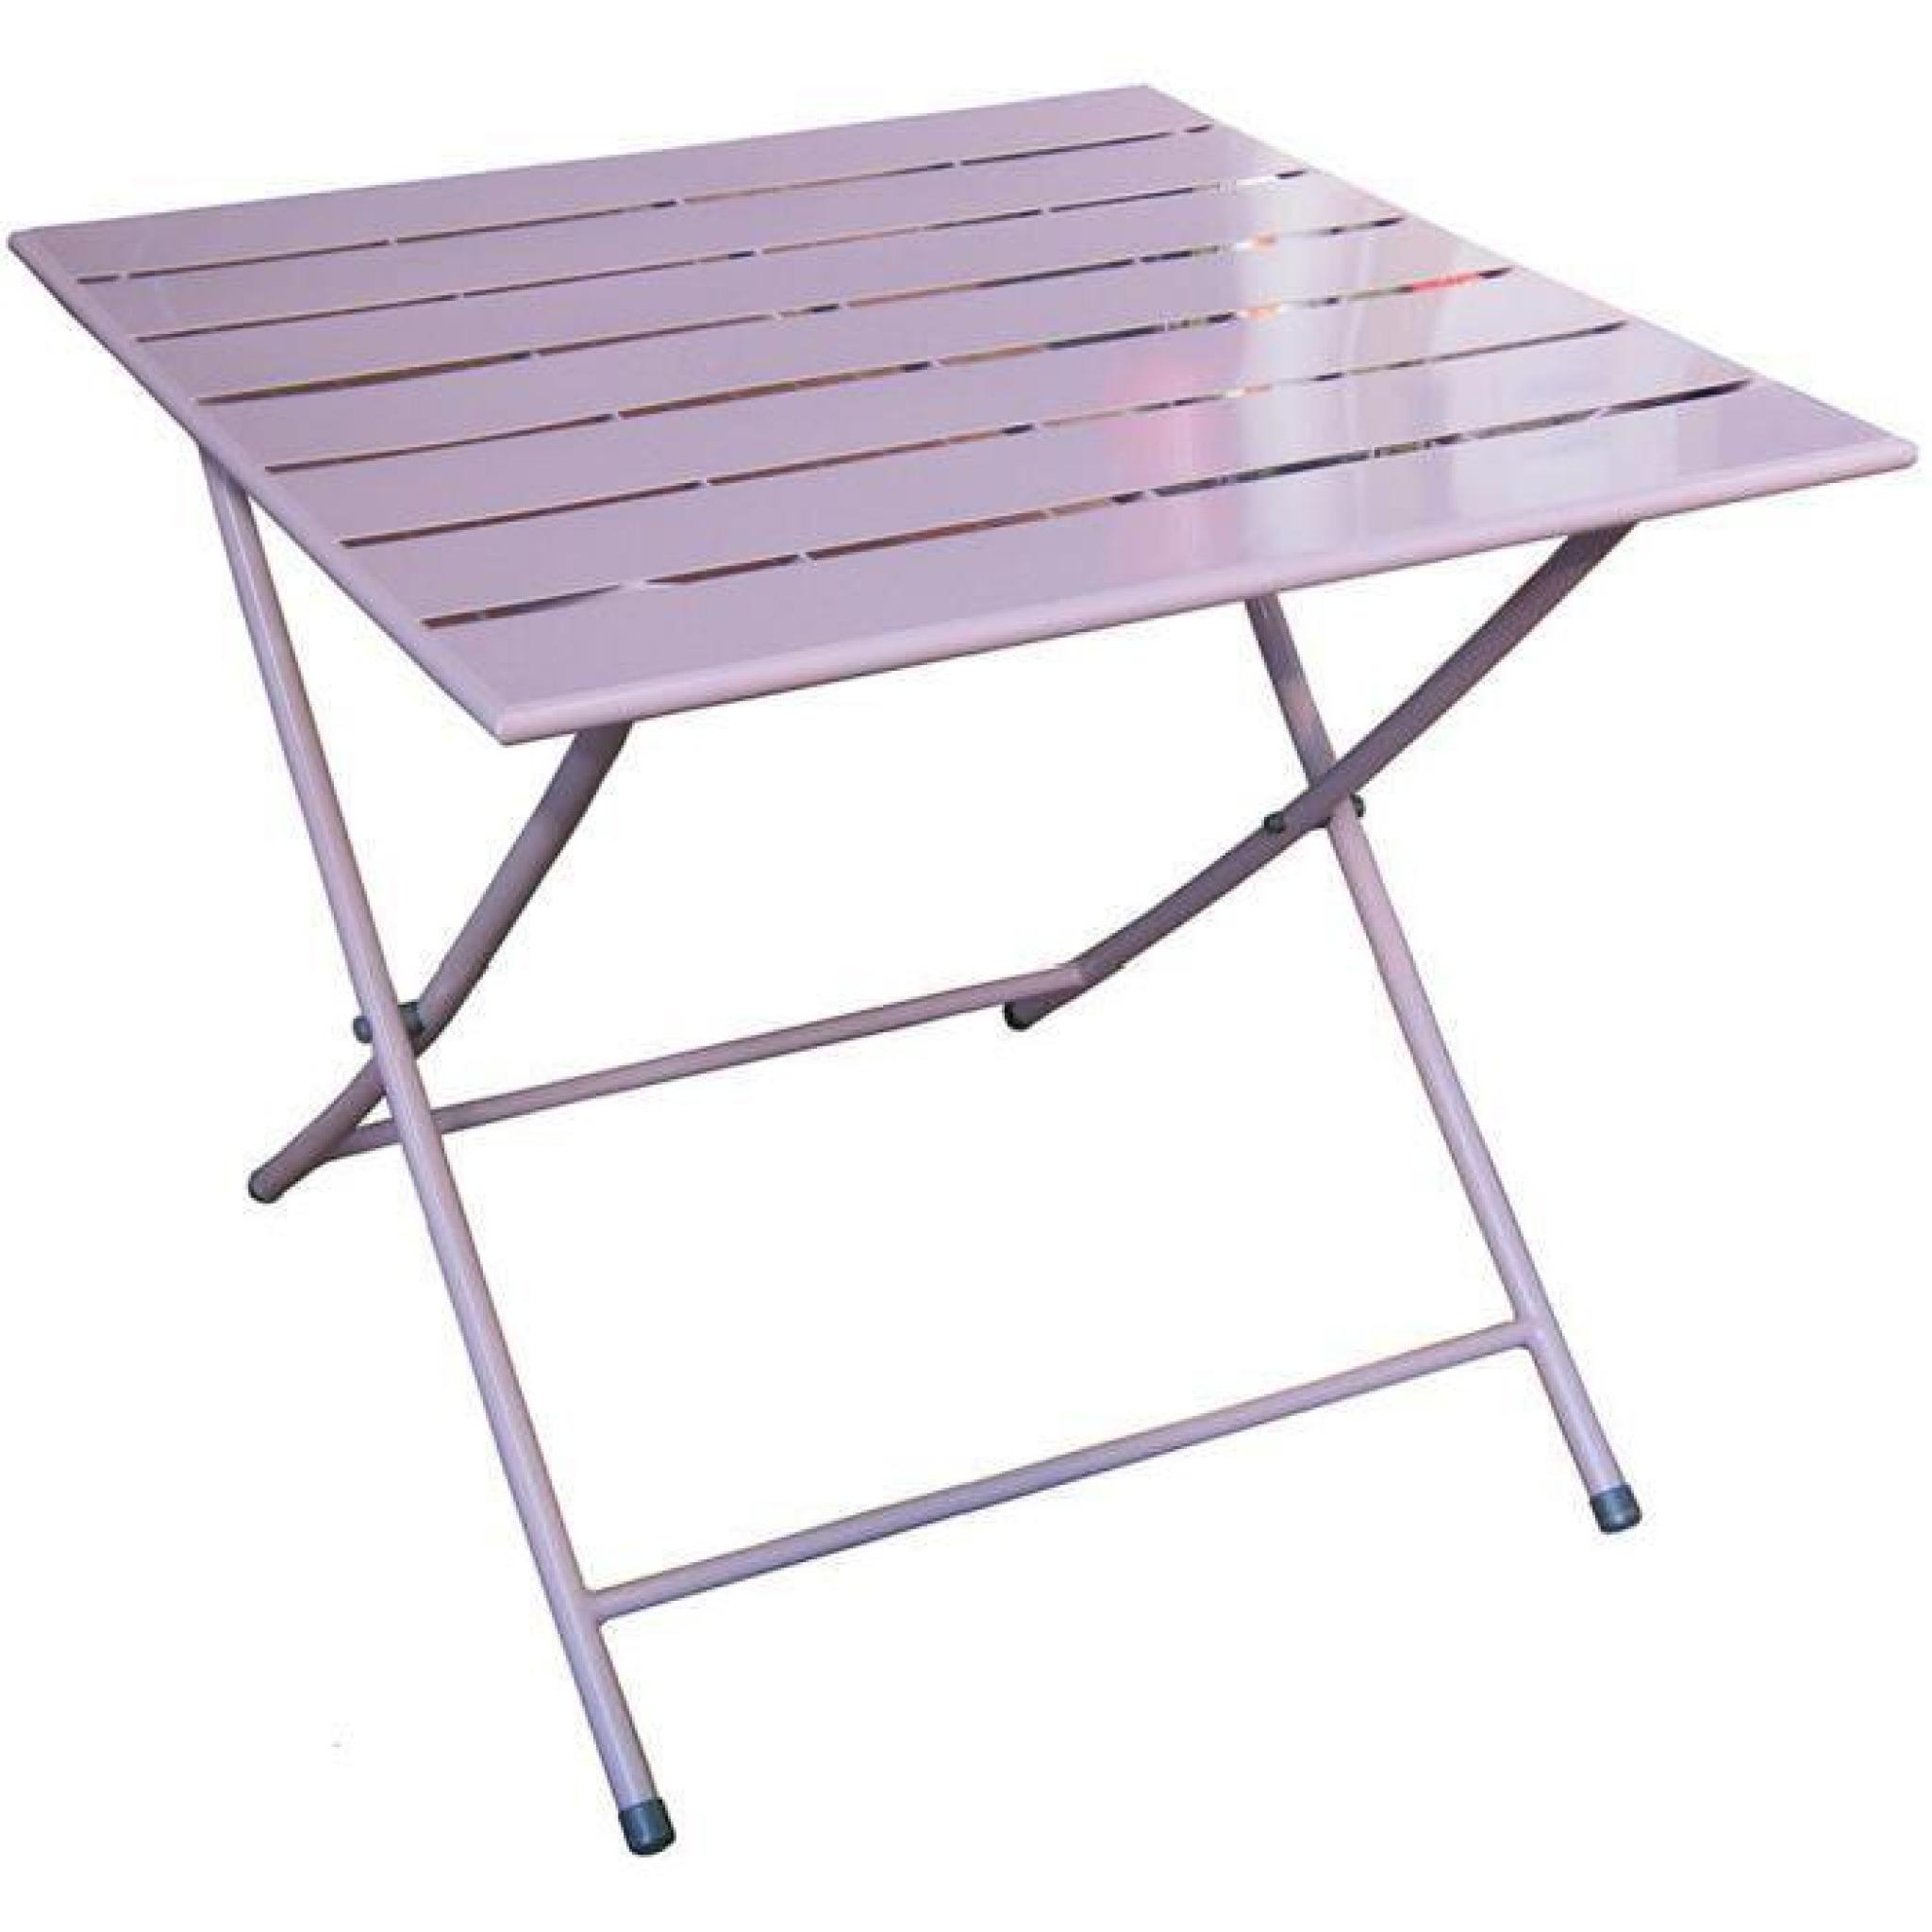 Table pliante de jardin en fer coloris lavande - Dim : H 71 x L 80 x P 80 cm